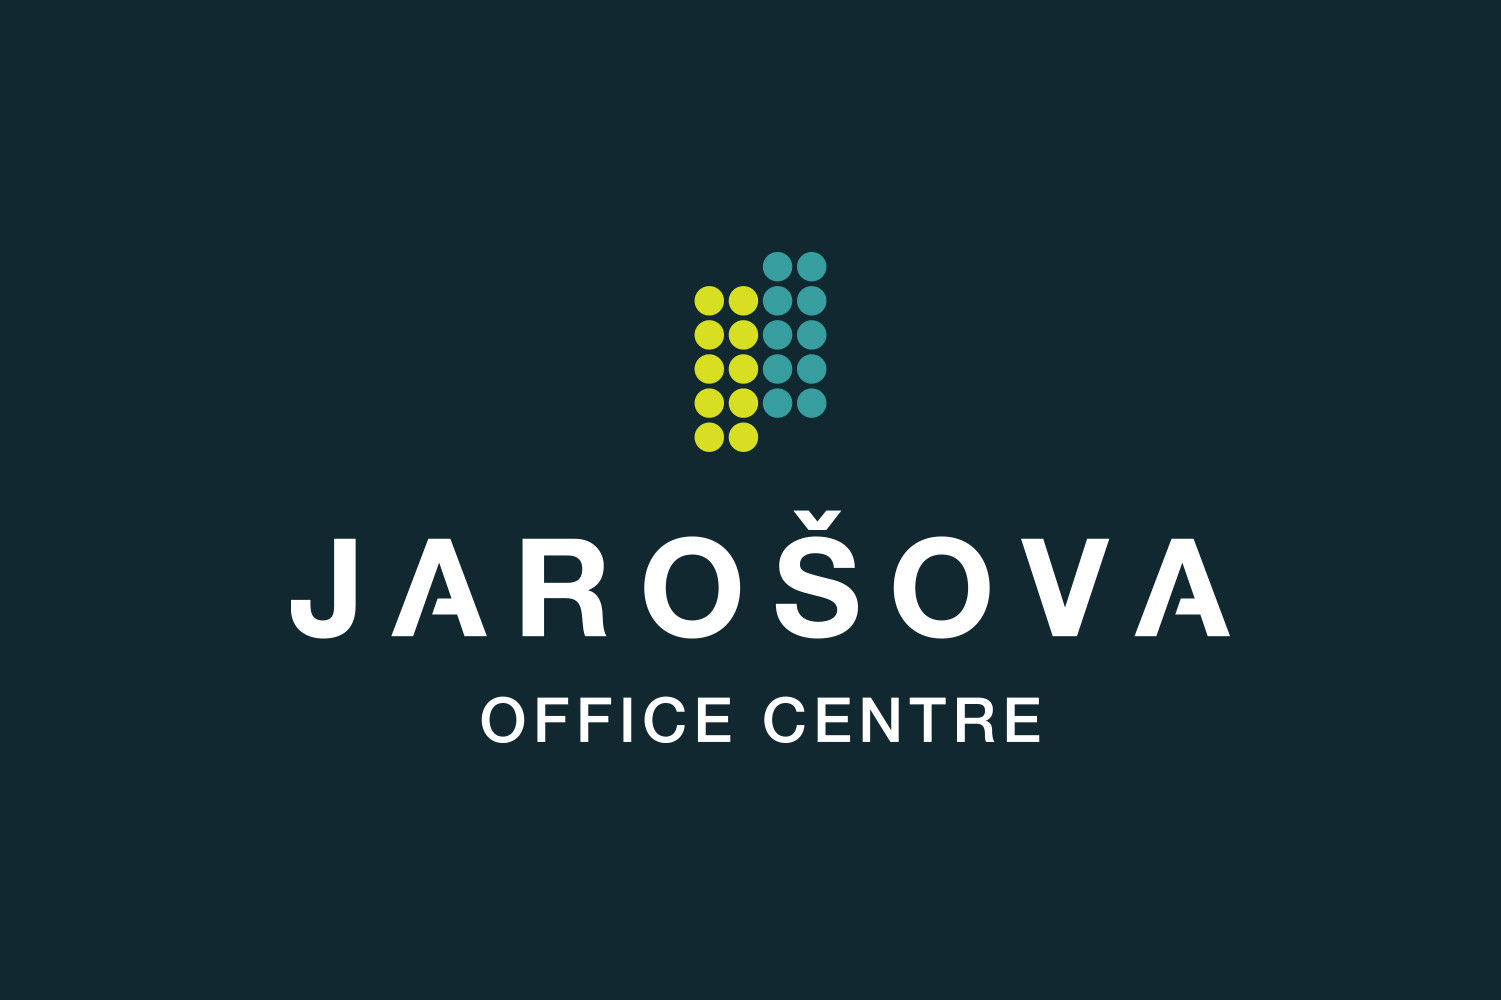 Jarosova, corporate identity image